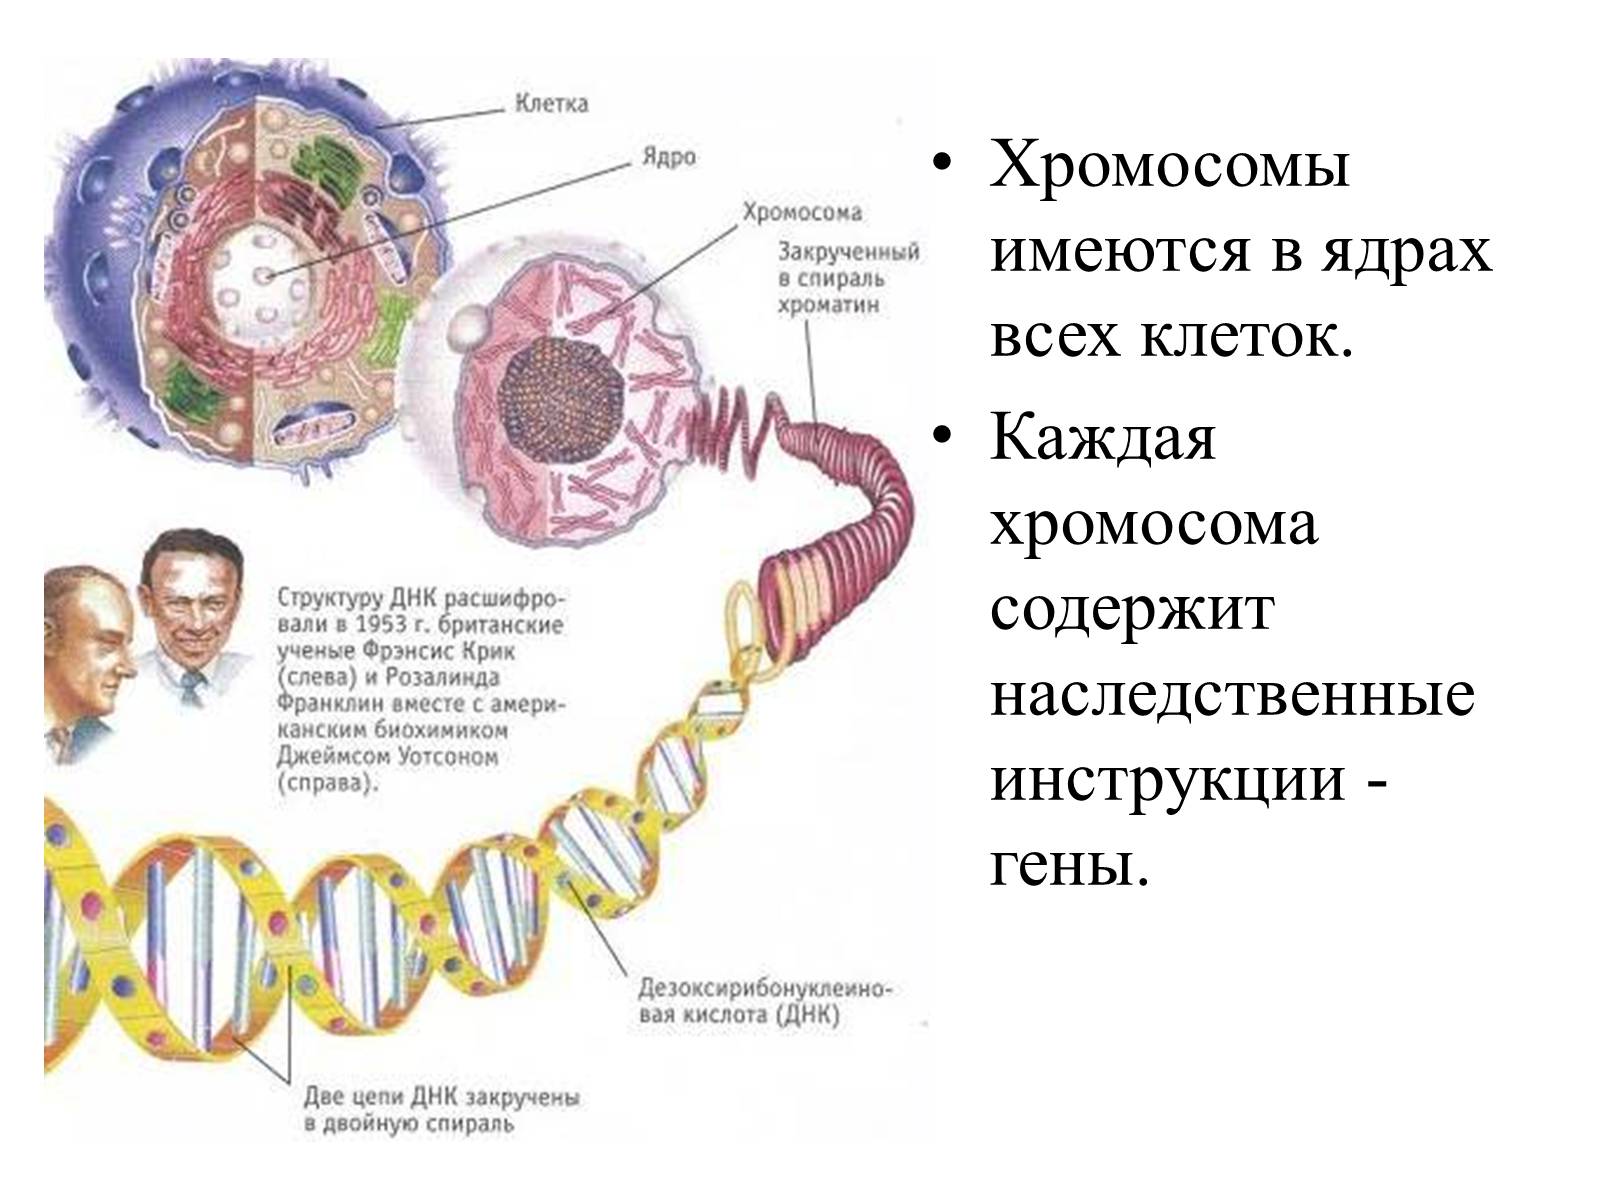 Какие структуры в ядрах содержат днк. Строение генетического аппарата клетки. Ядро клетки человека ДНК гены хромосомы. Структура клетки содержащая ДНК. Строение ядра клетки хромосомы.